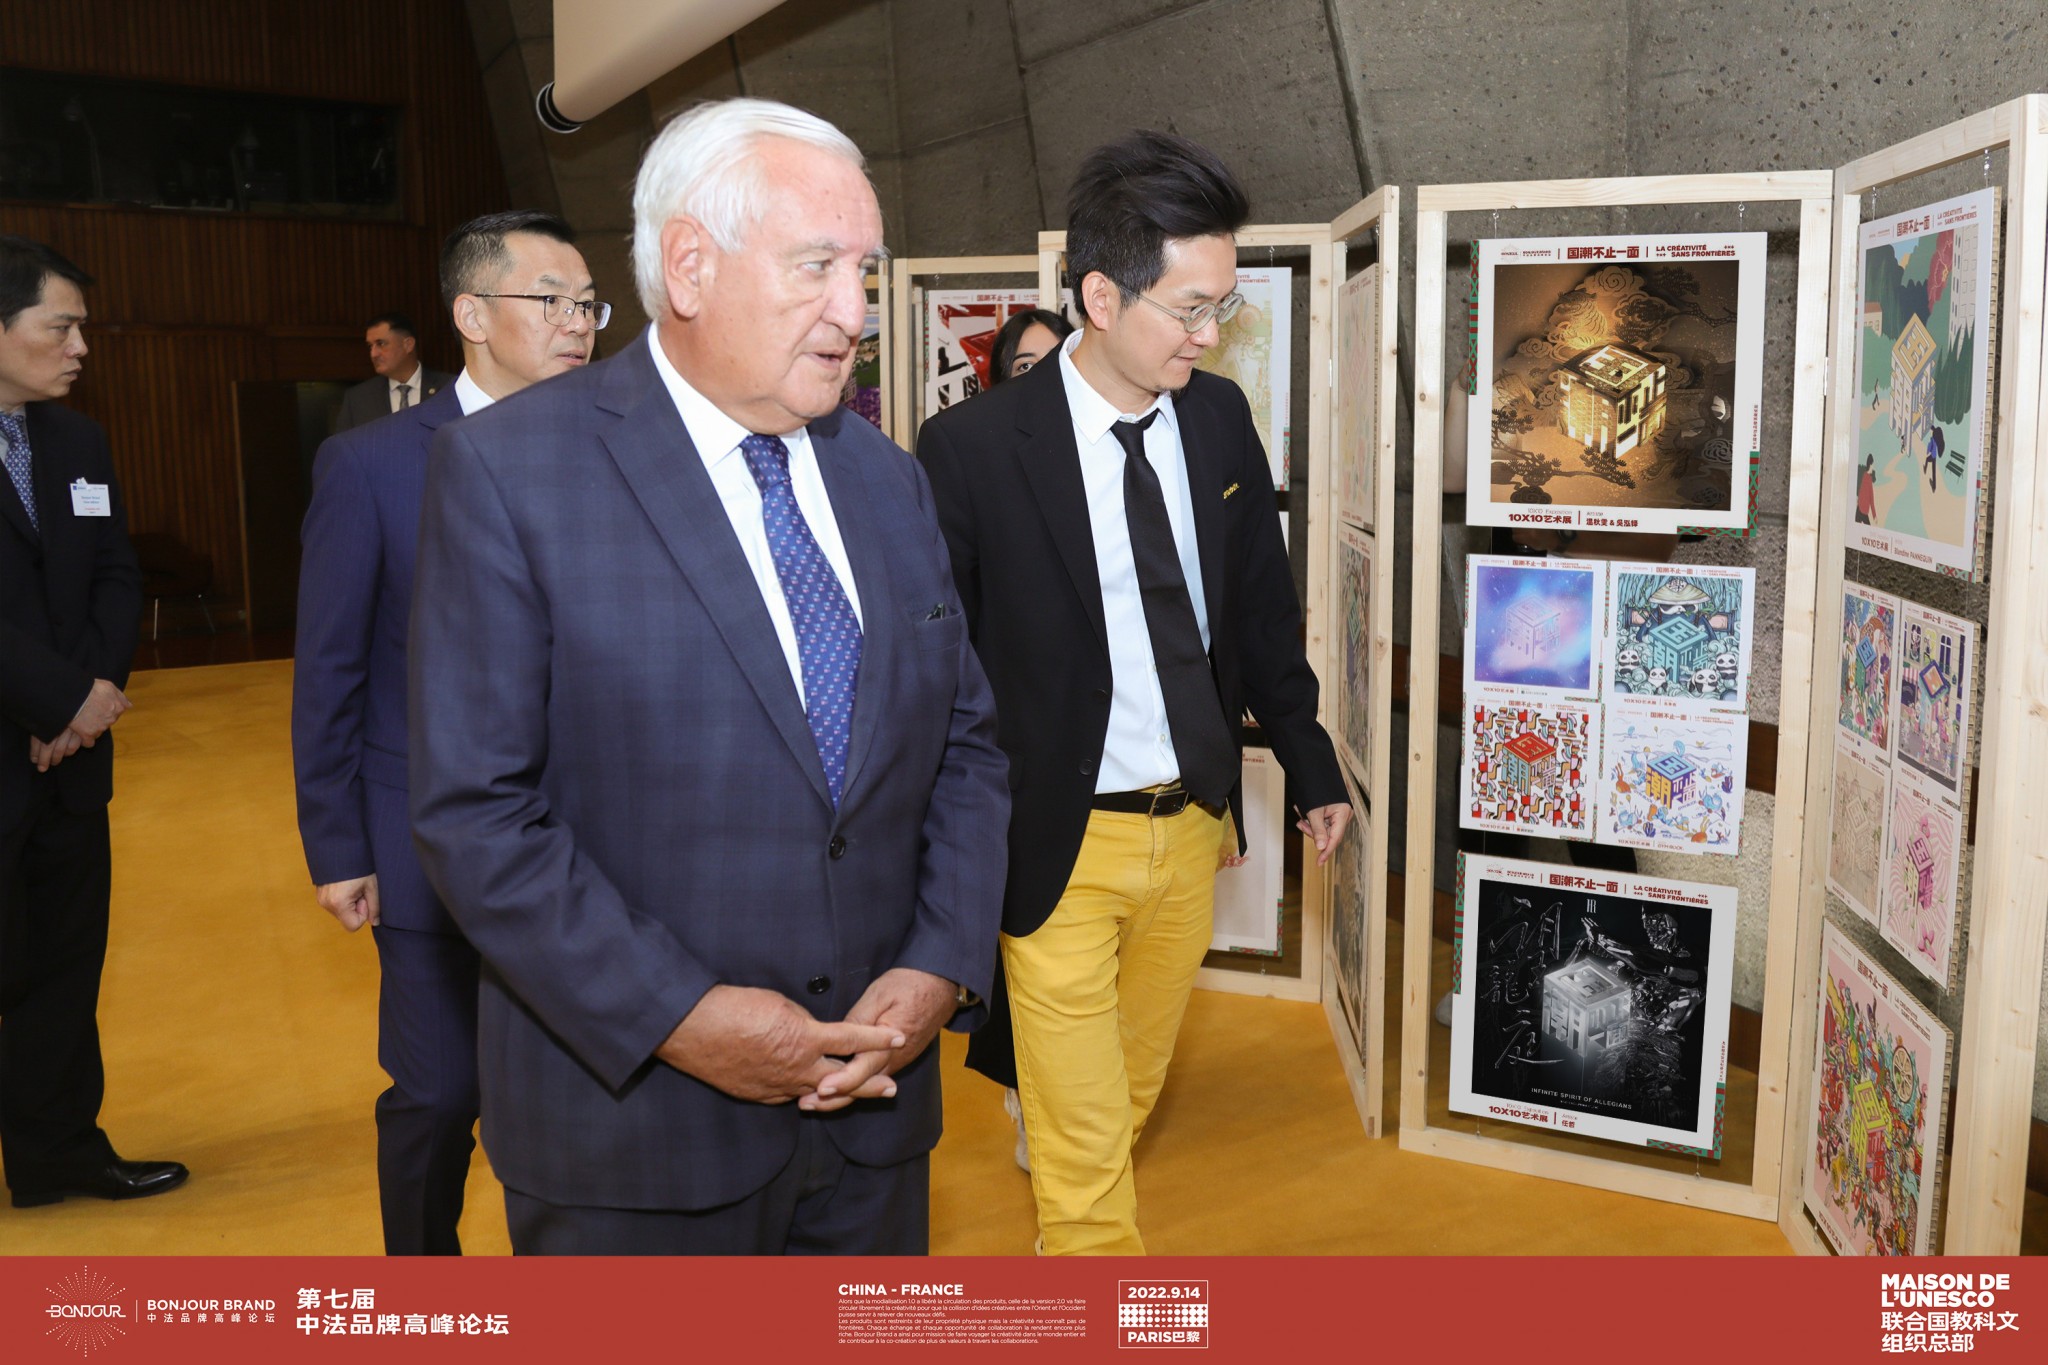 法国前总理拉法兰先生与中国驻法国大使卢沙野先生及中法品牌美学中心创始人杨晶一同观展